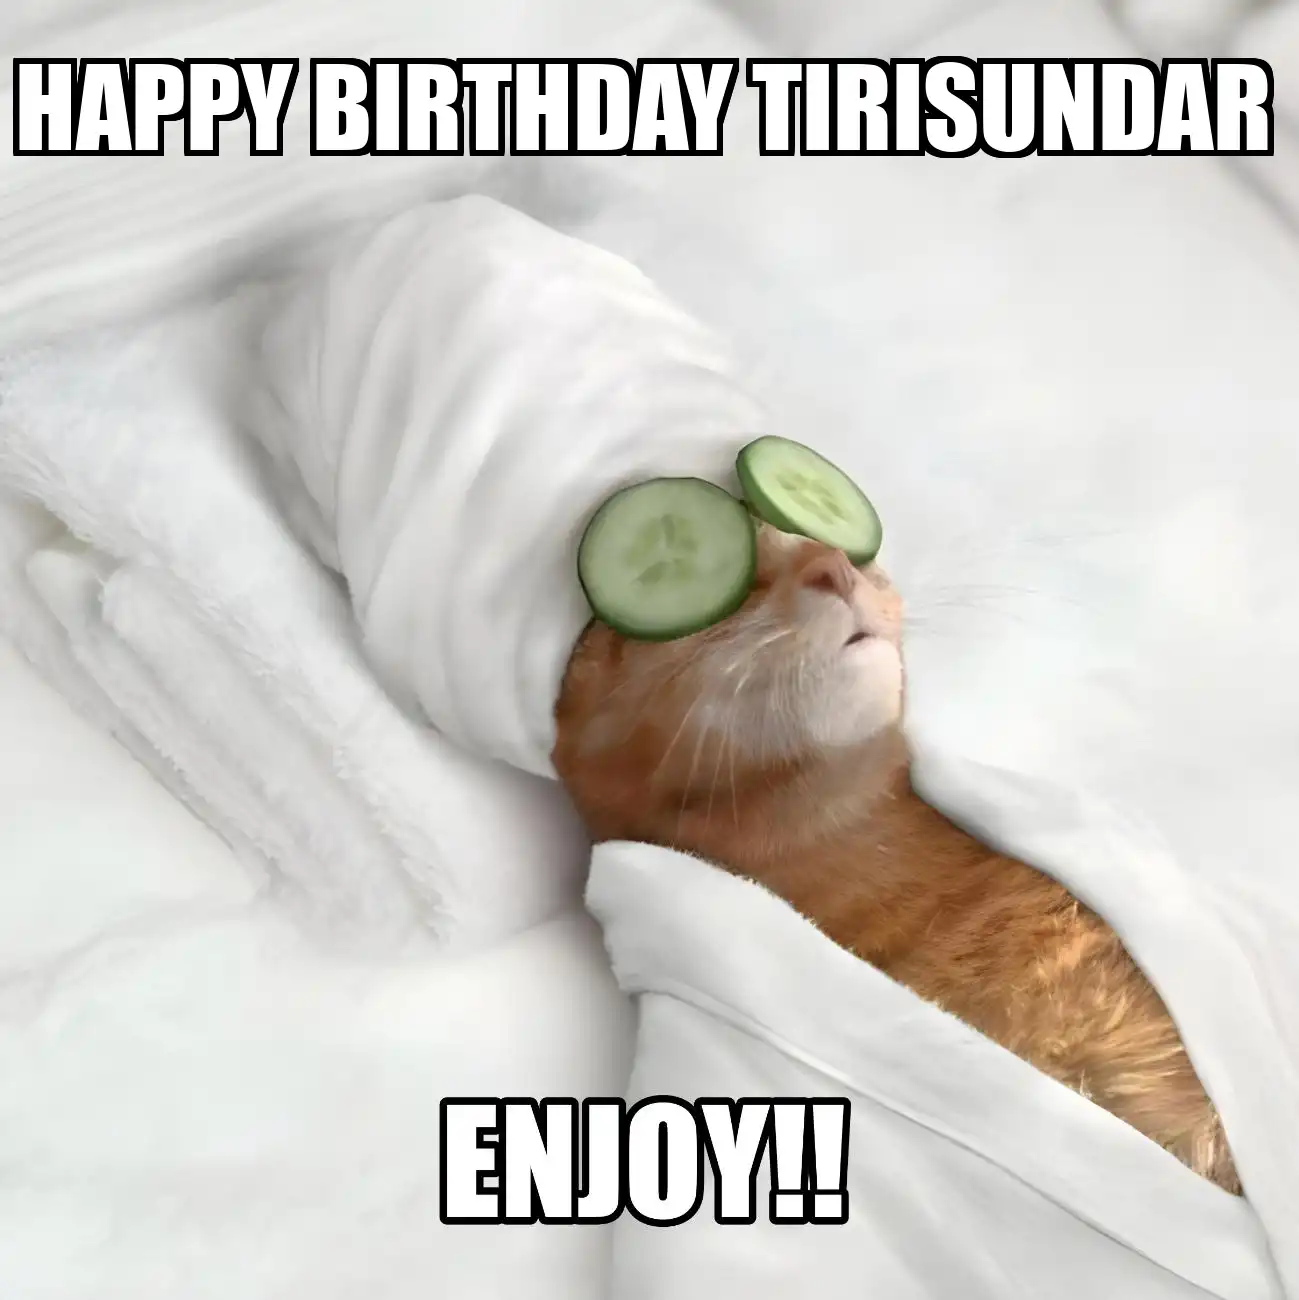 Happy Birthday Tirisundar Enjoy Cat Meme